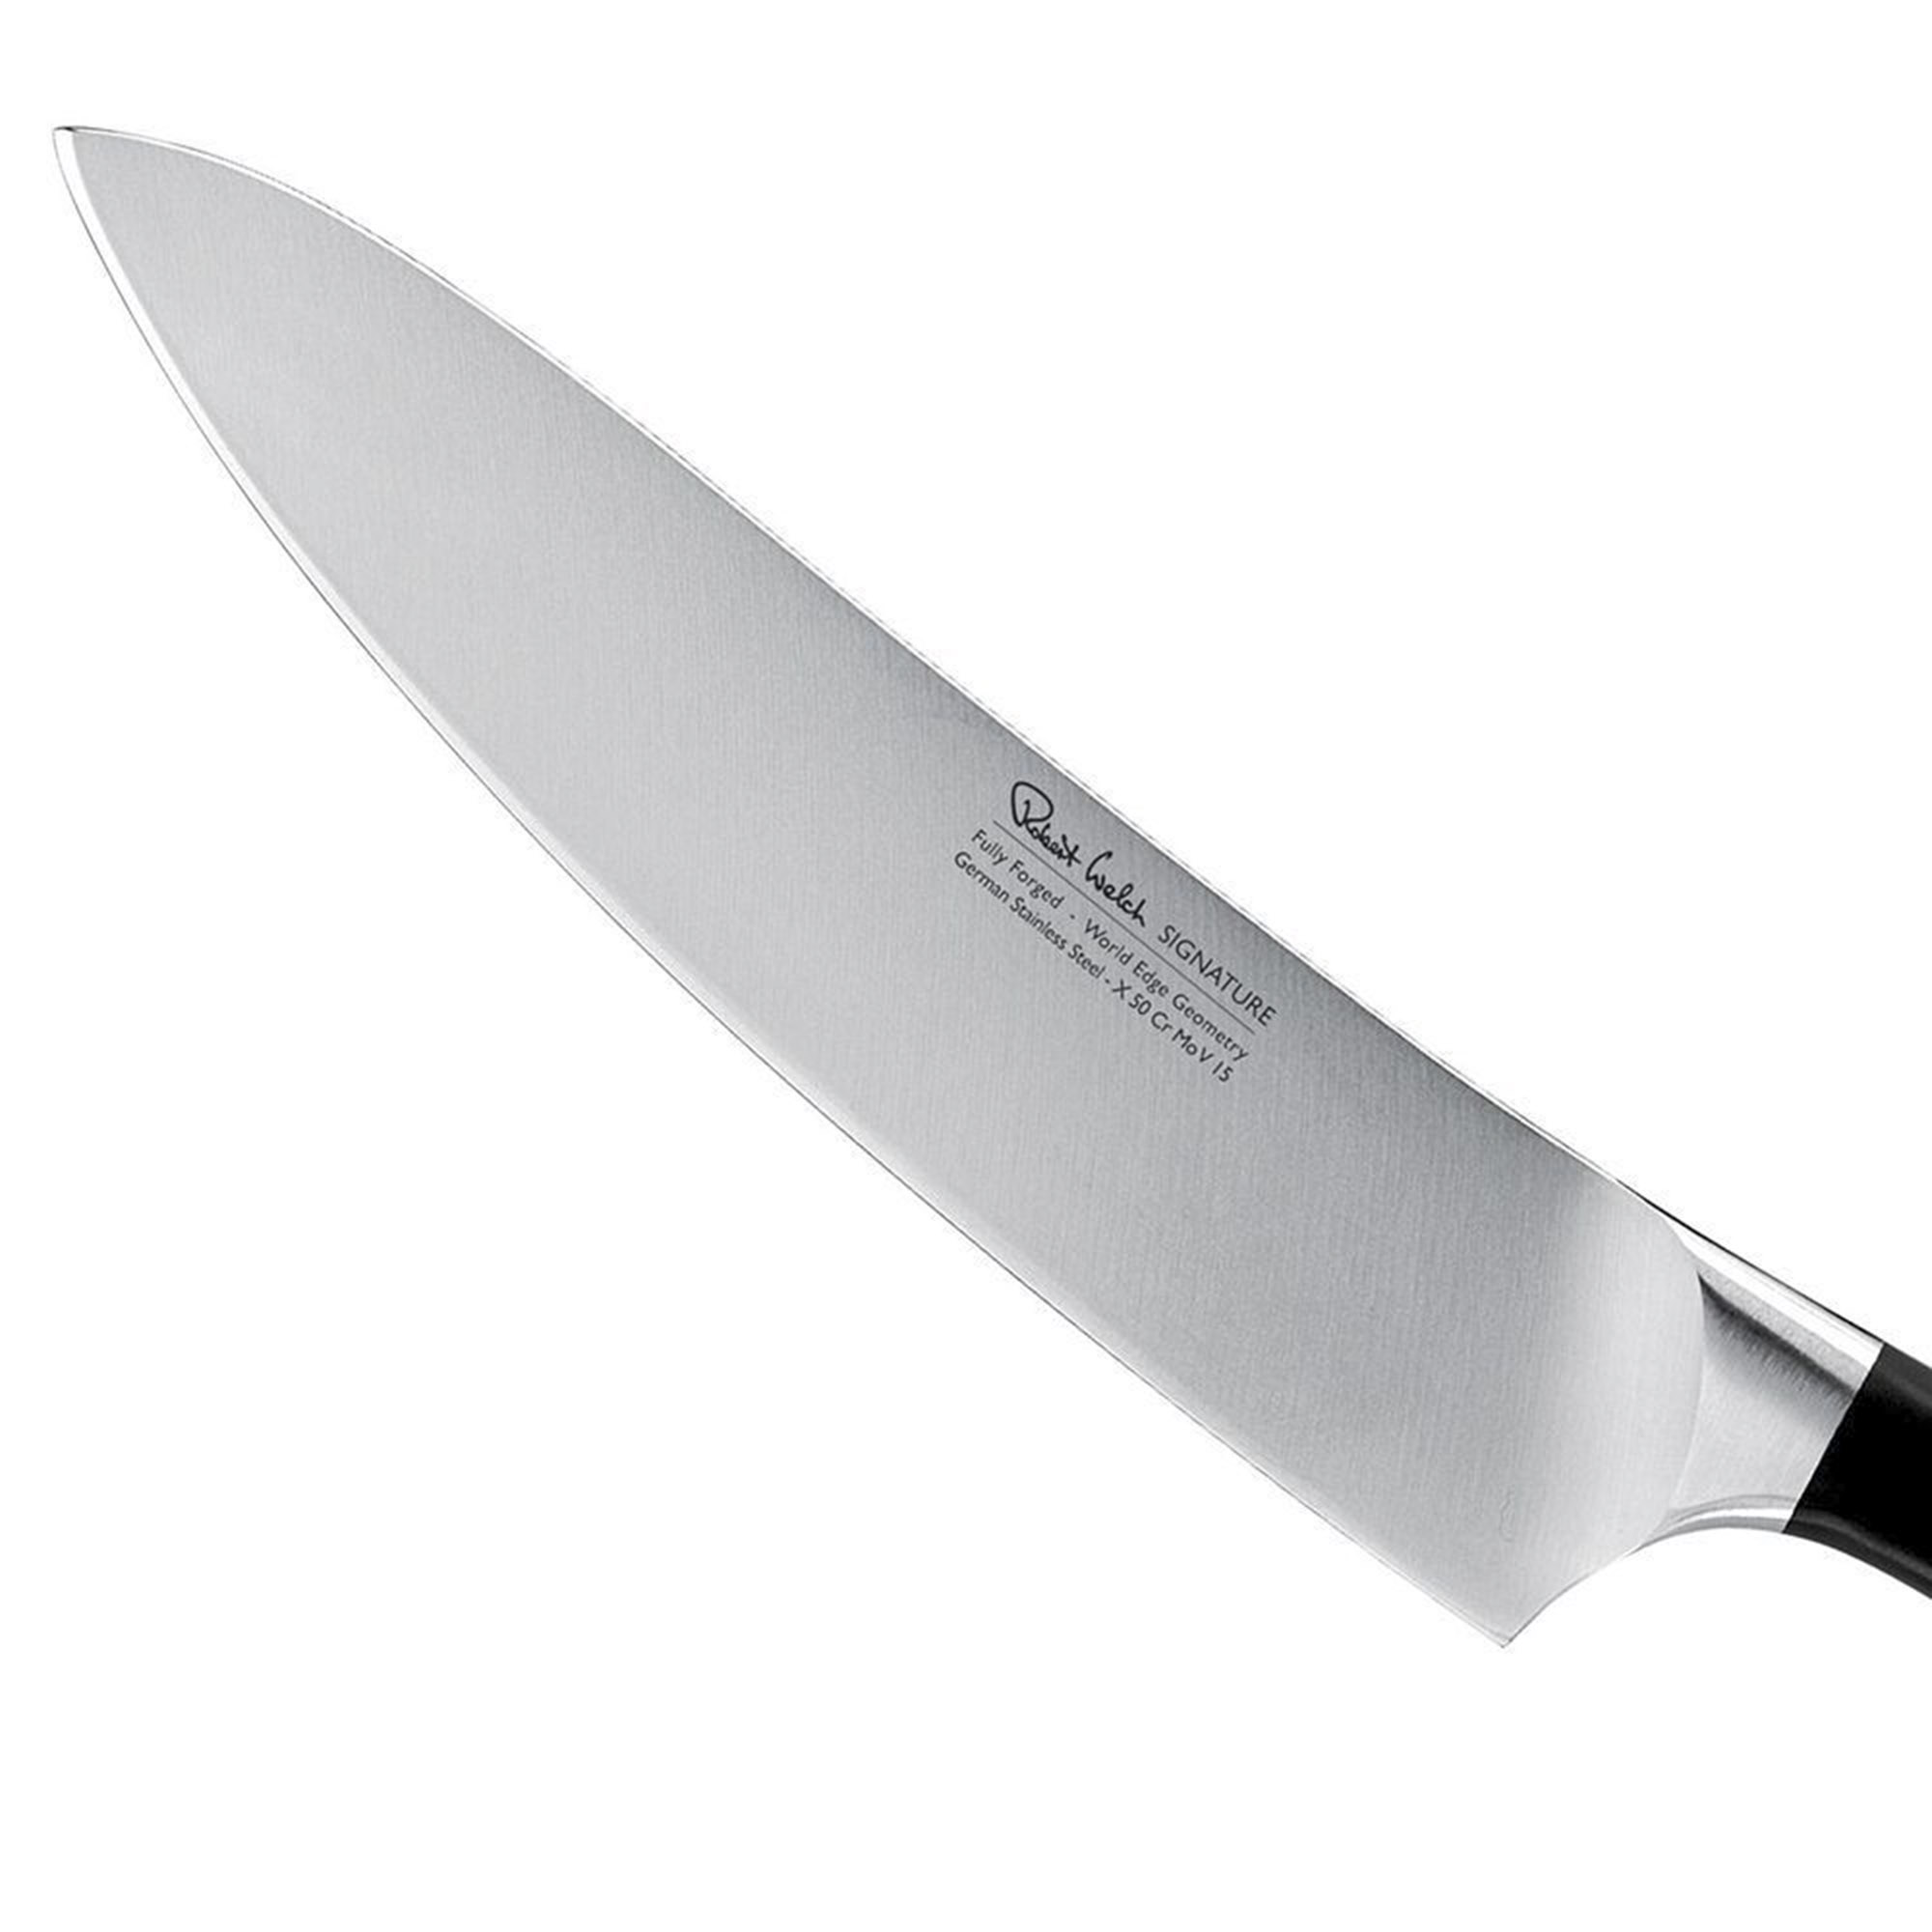 Поварской кухонный шеф-нож Robert Welch Signature 18 см, цвет серебряный - фото 2